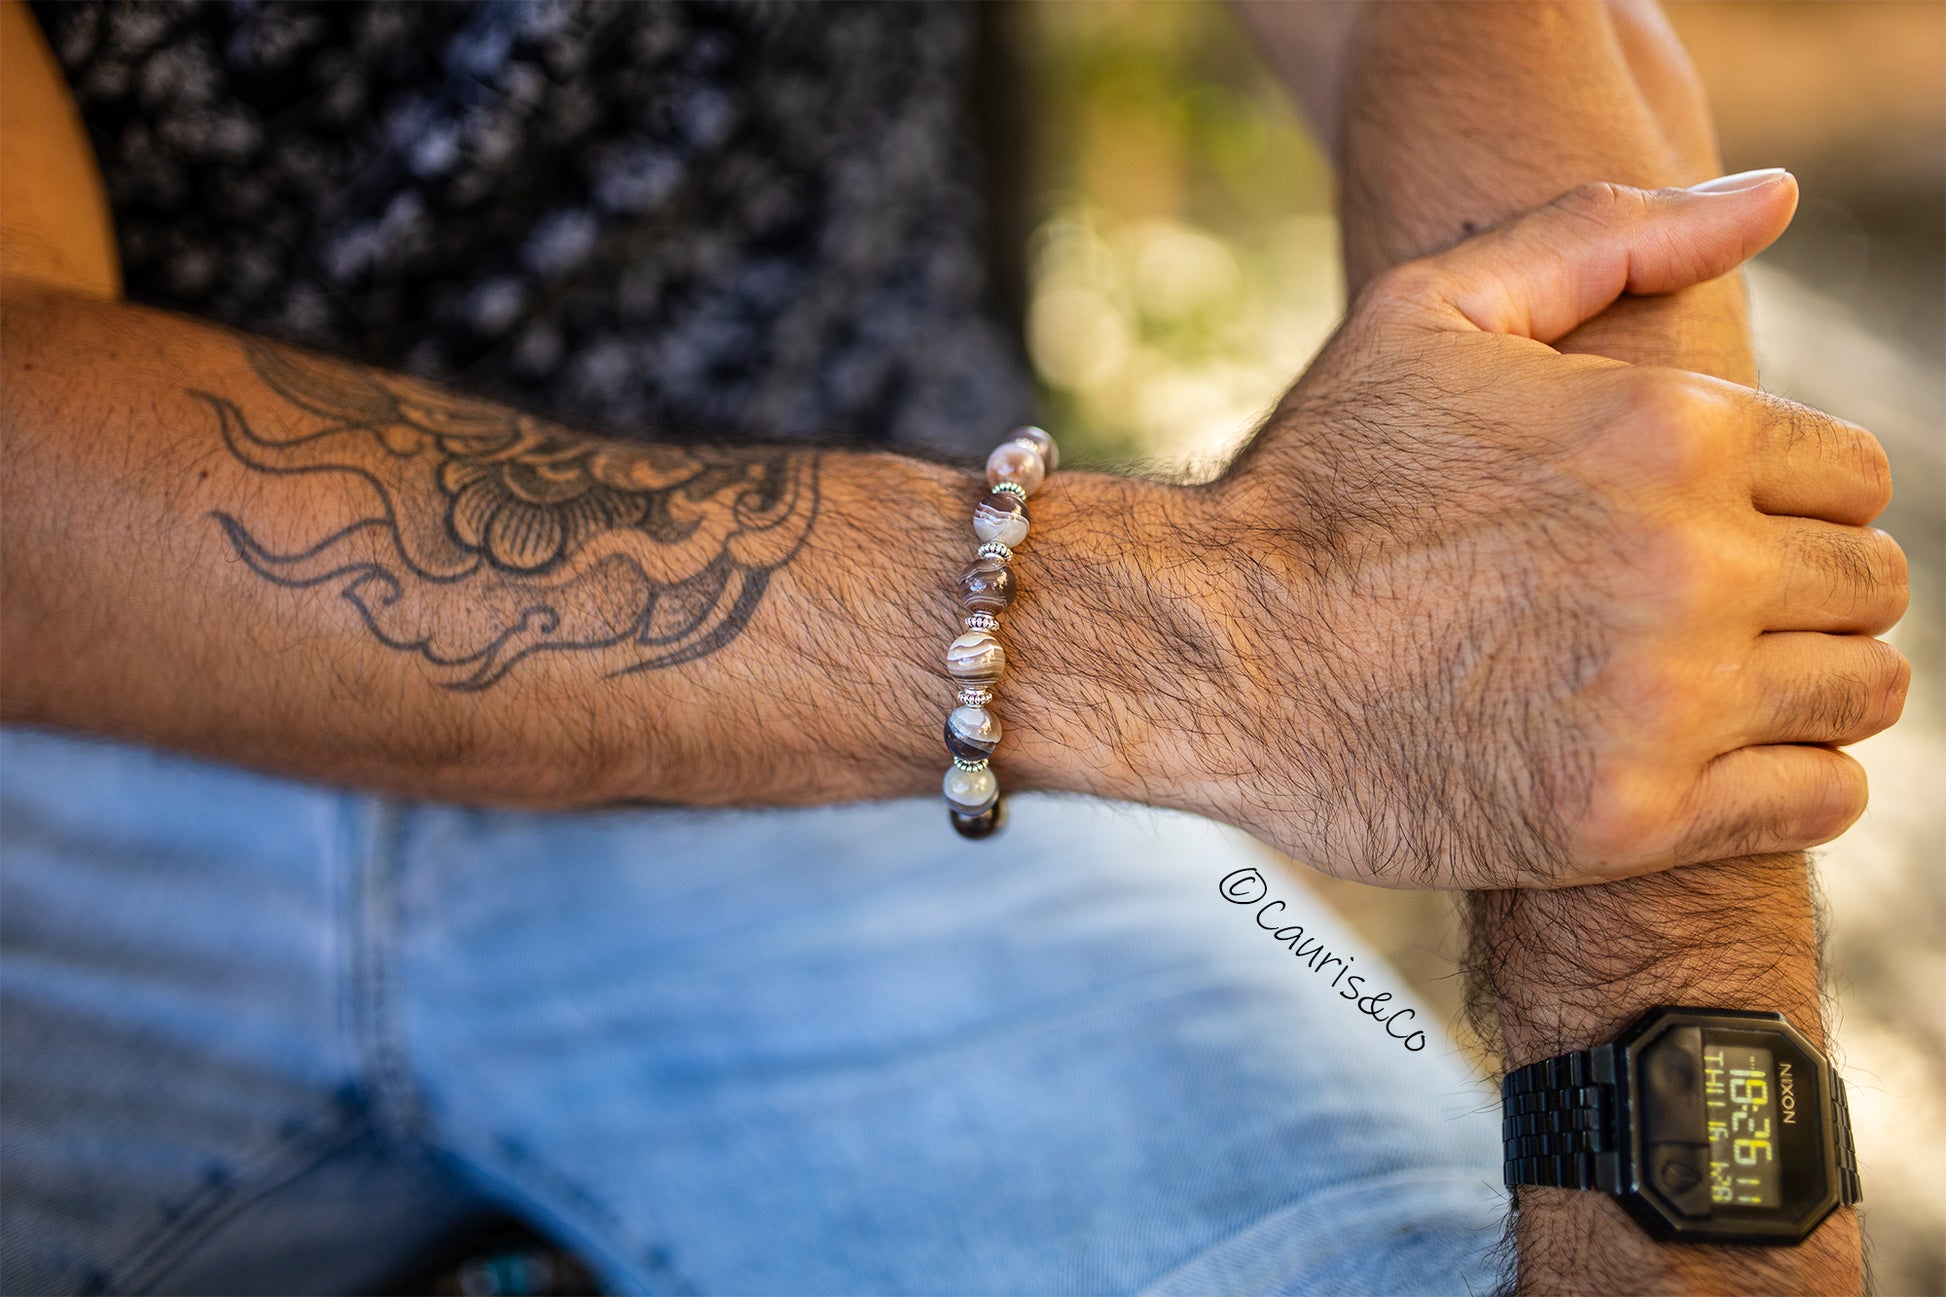 bracelet agate du botswana et perles plaqué argent fait main piece unique - caurisandco